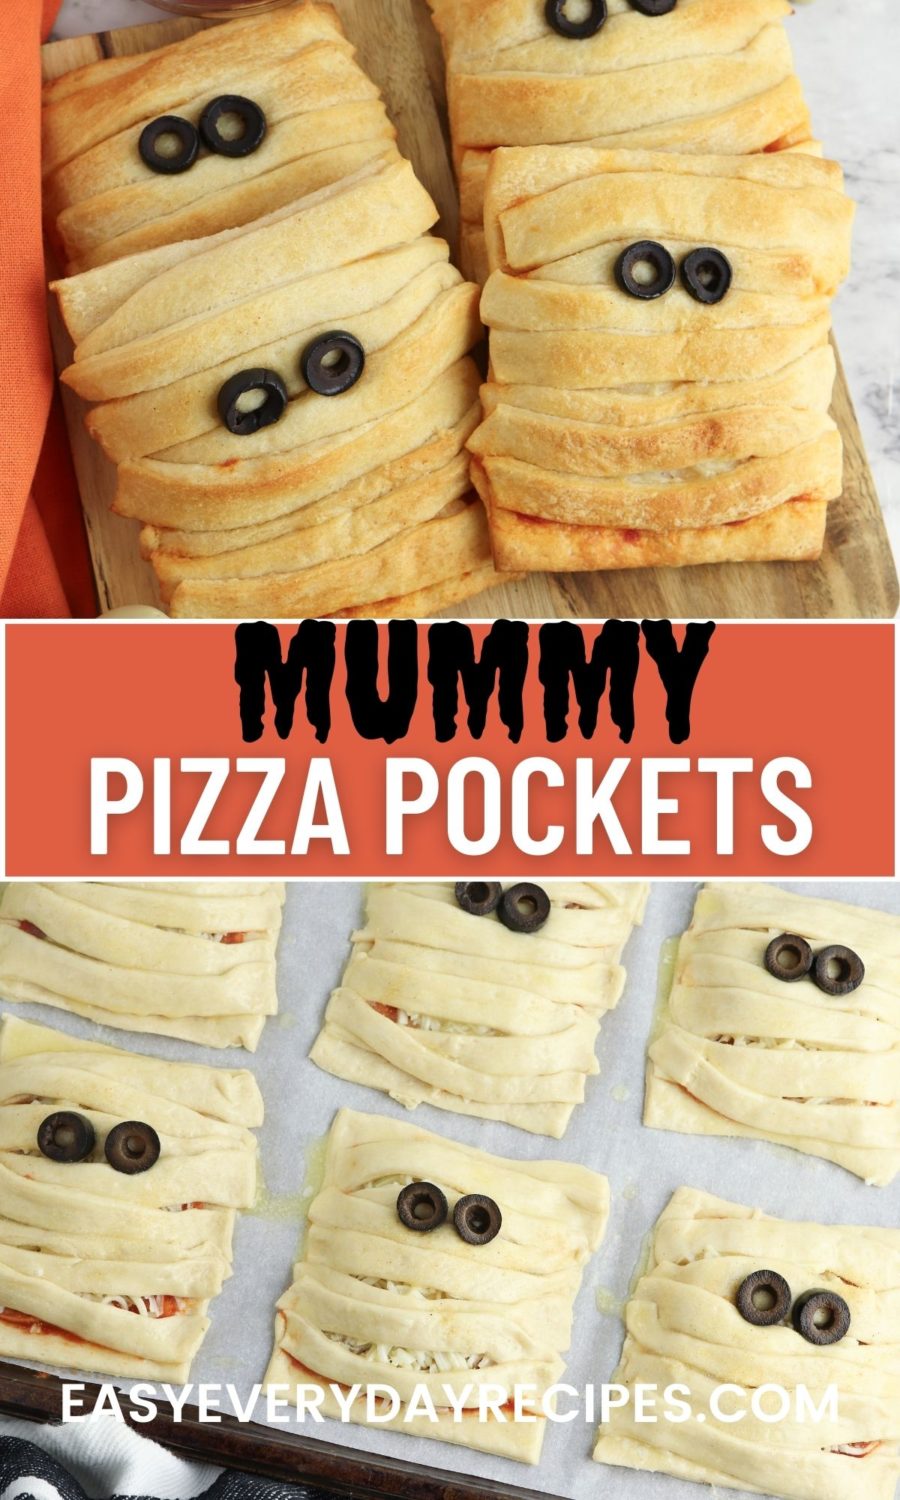 Mummy pizza pockets with the text mummy pizza pockets.